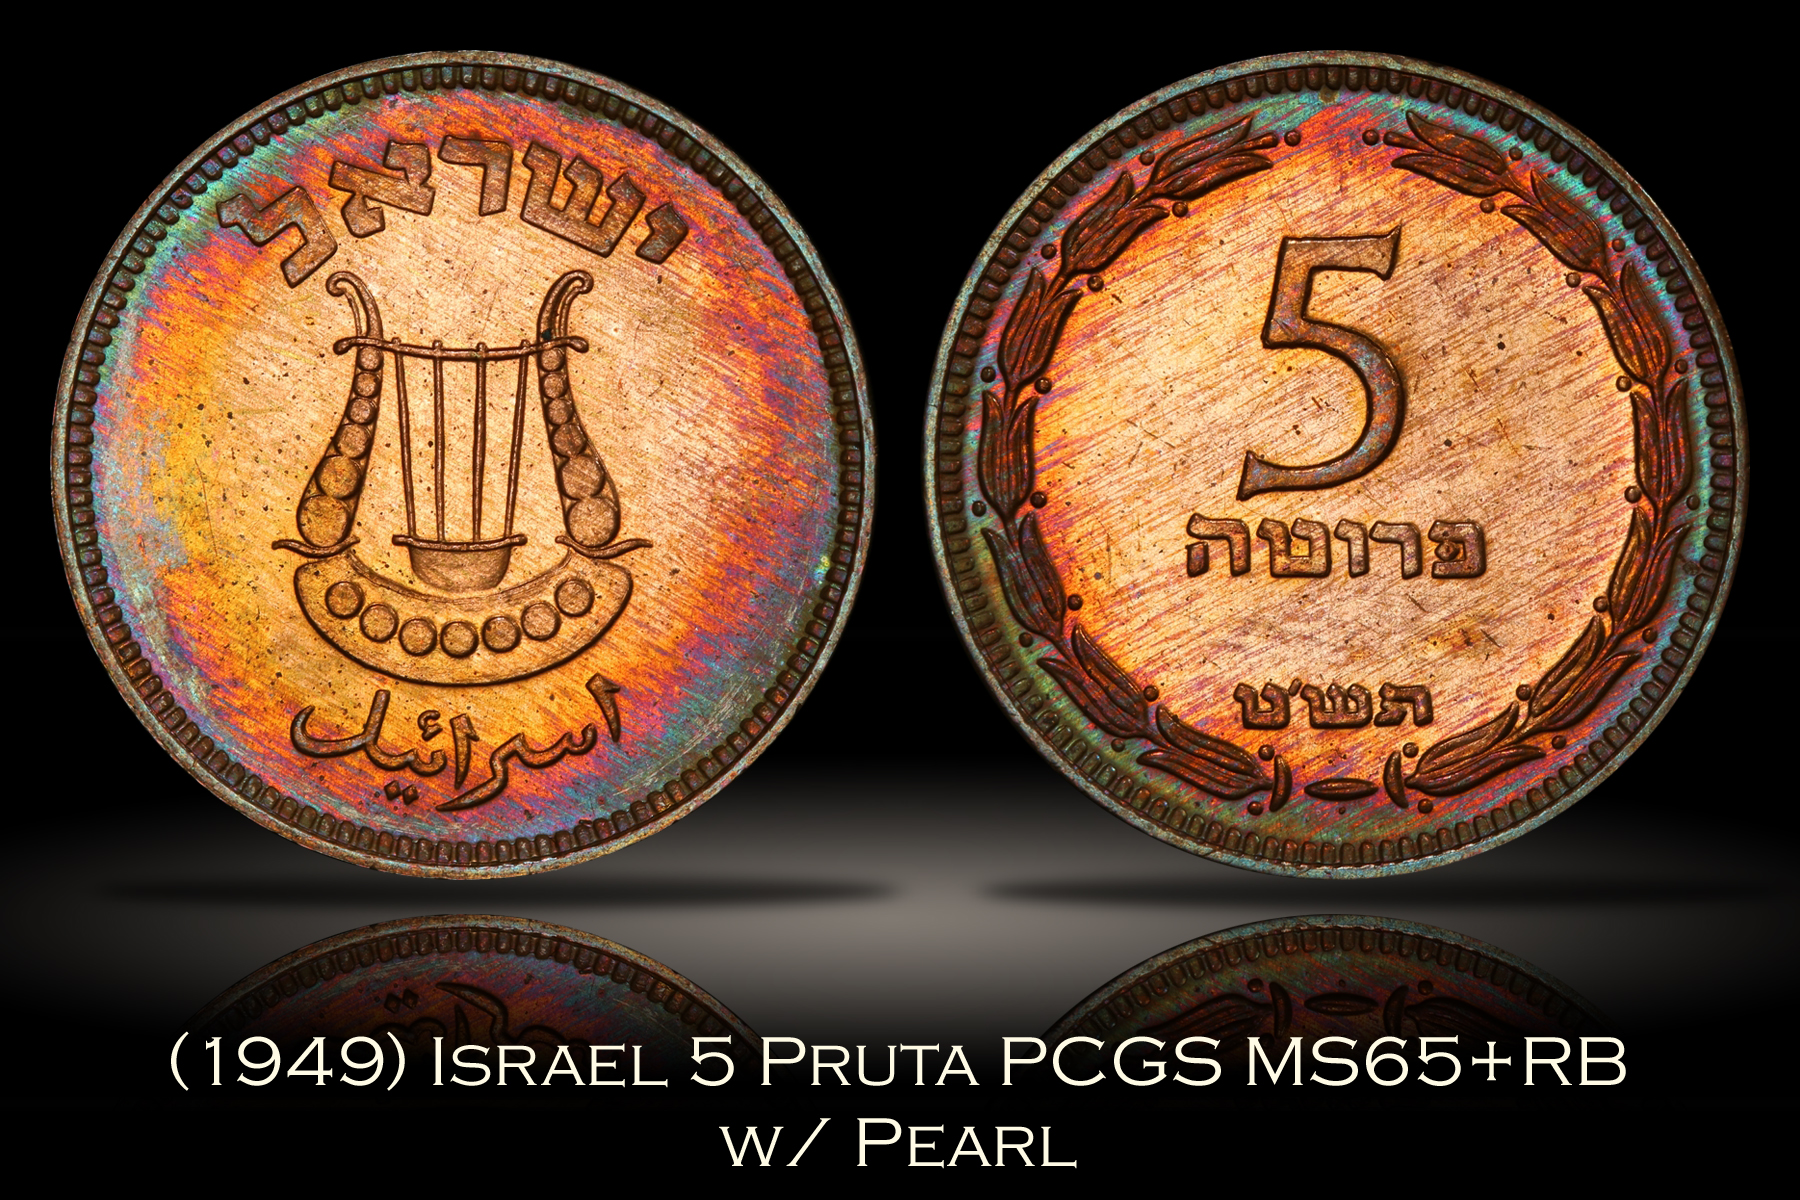 1949 Israel 5 Pruta w/ Pearl PCGS MS65+RB